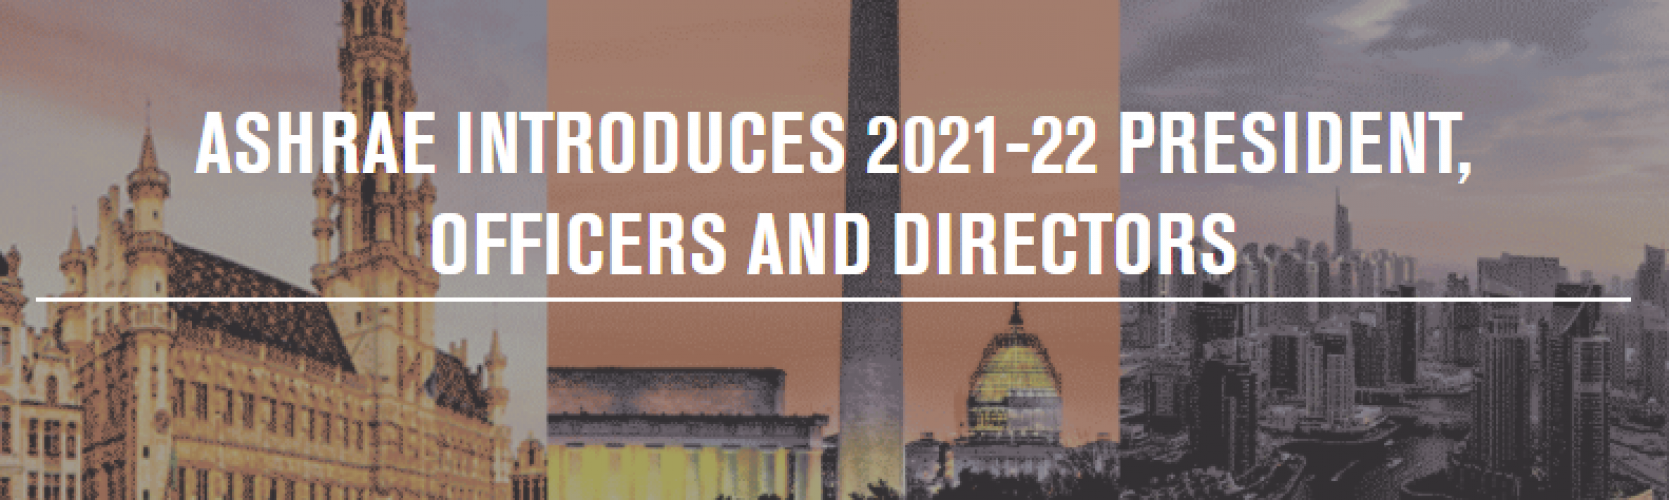 ASHRAE presenta al presidente, funcionarios y directores de 2021-22